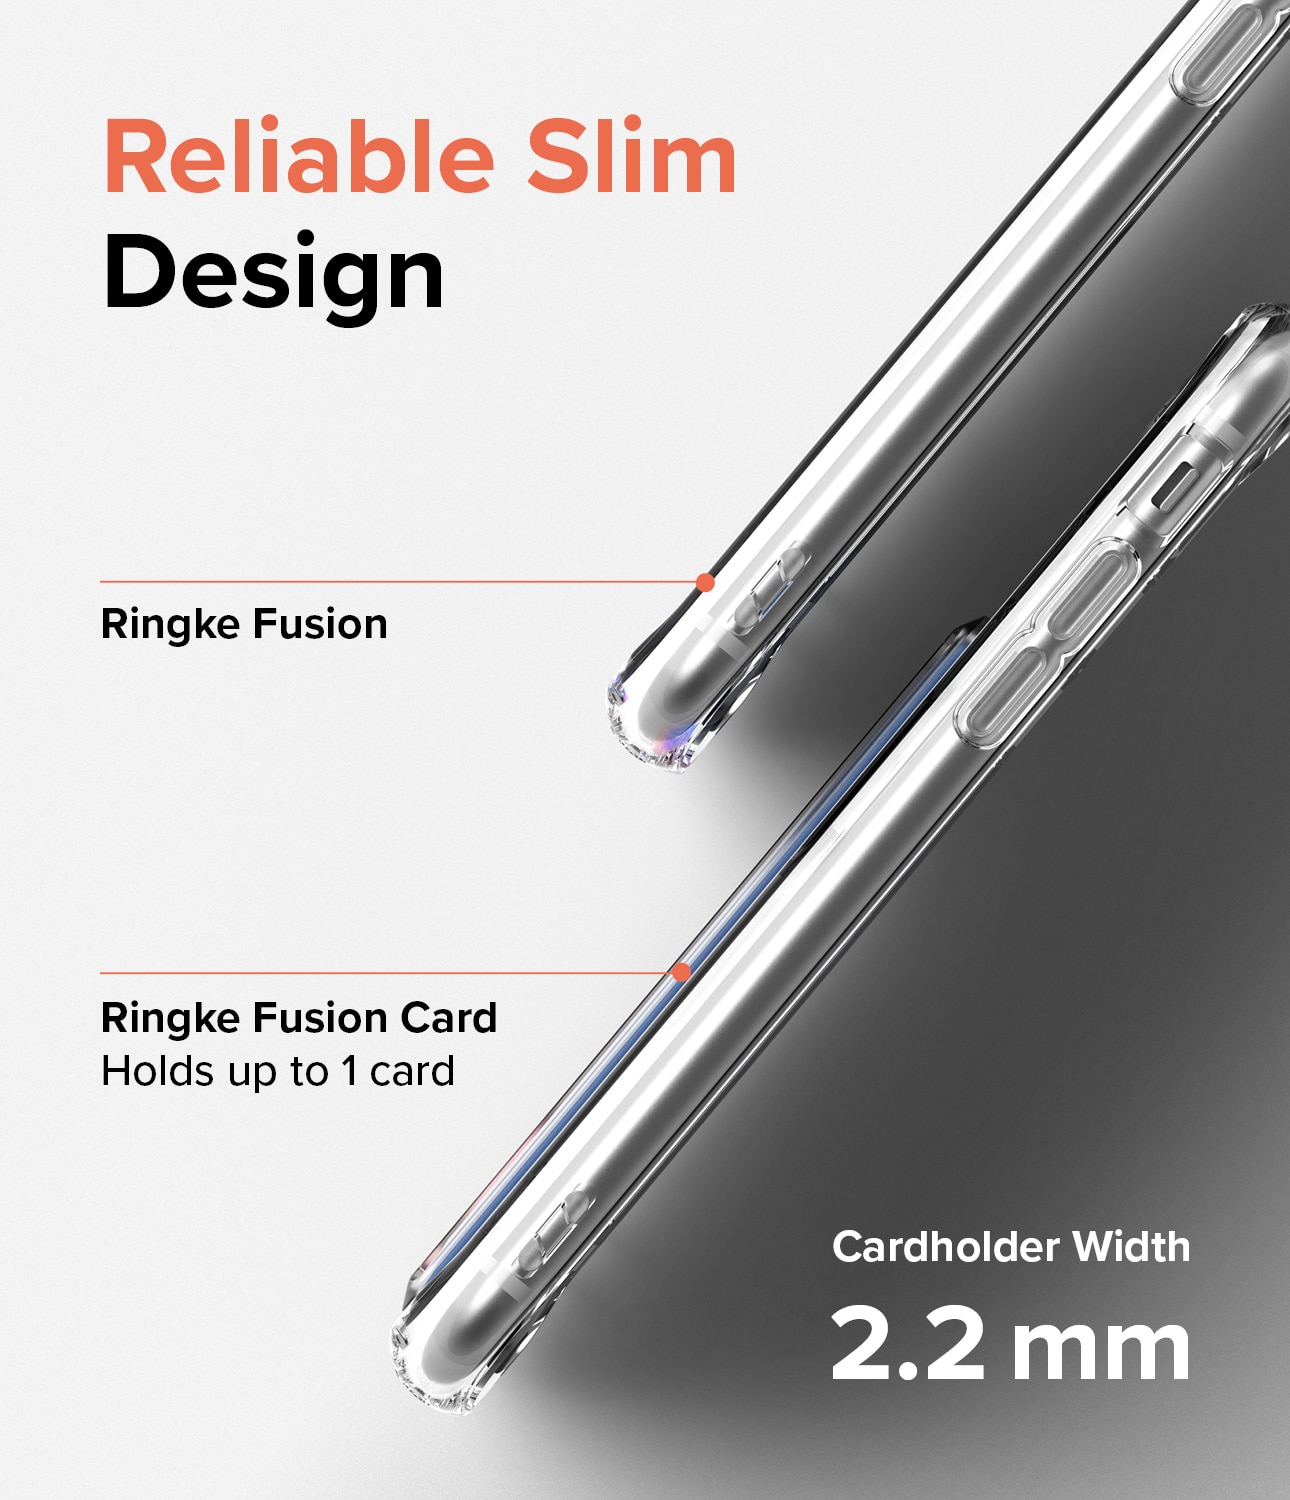 Coque Fusion Card iPhone 7 Transparent